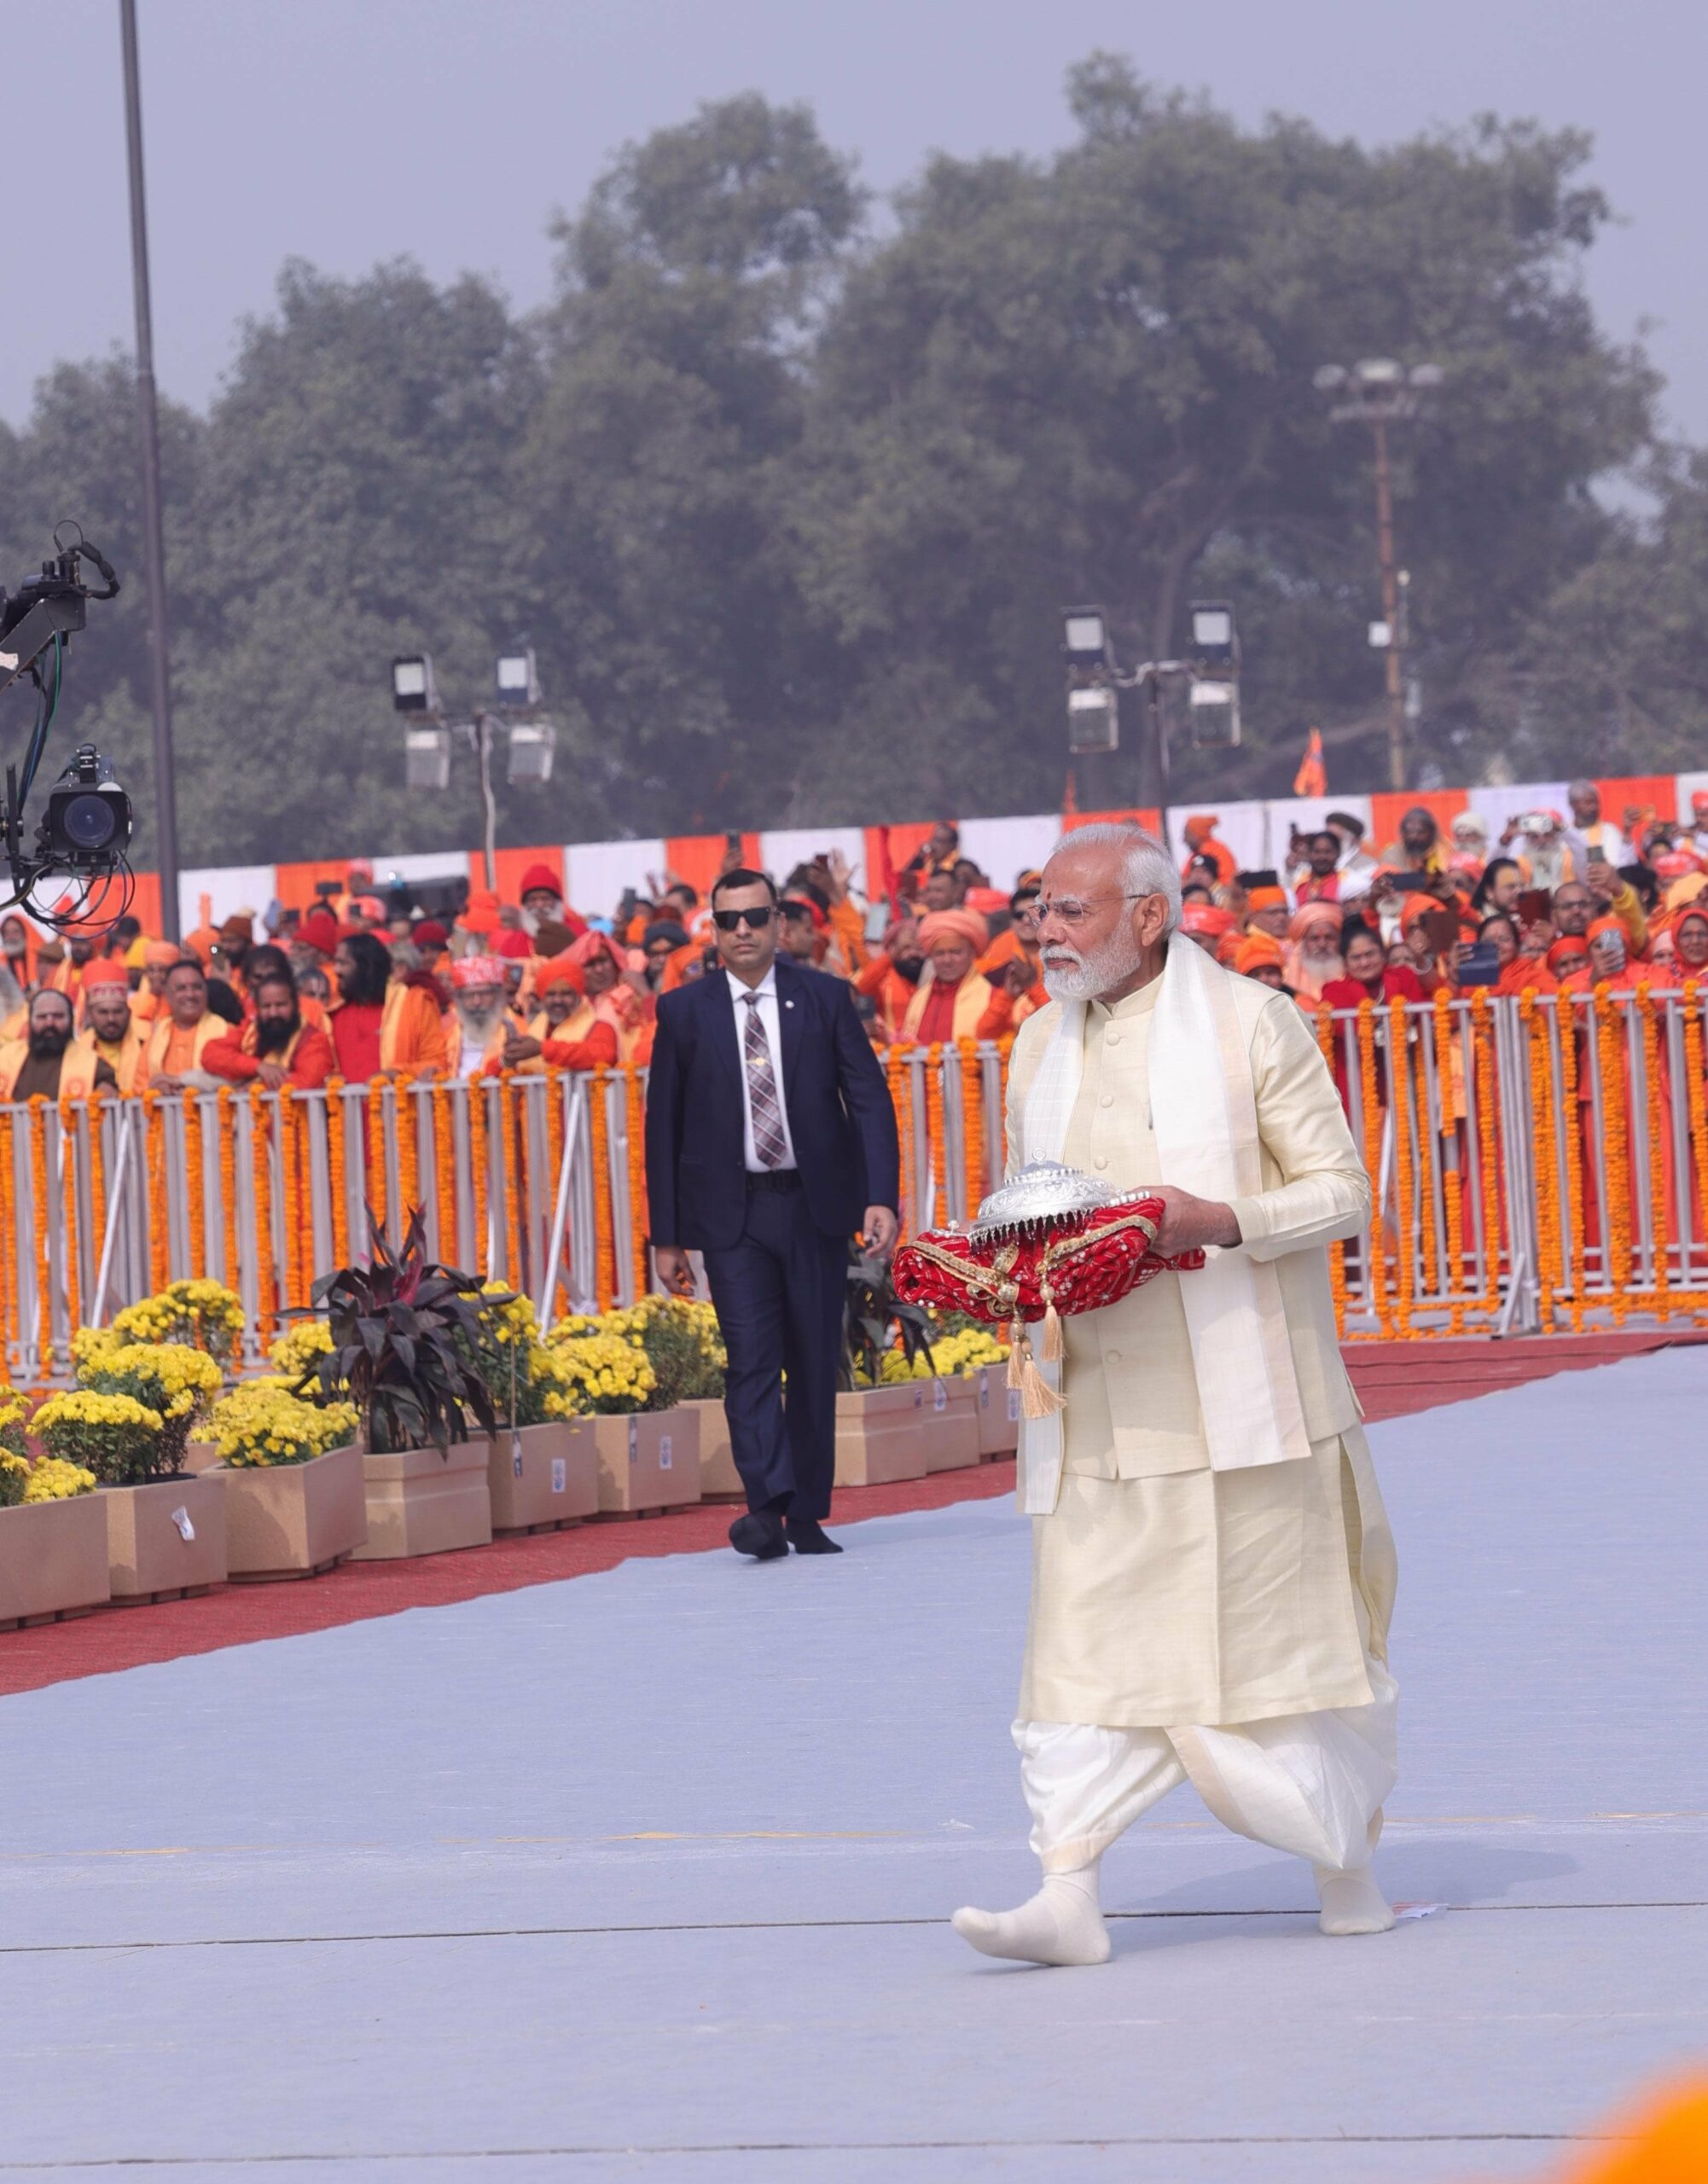 प्रधानमंत्री नरेंद्र मोदी ने धोती कुर्ता पहने हाथों में छत्र लिए मंदिर के अंदर किया प्रवेश।